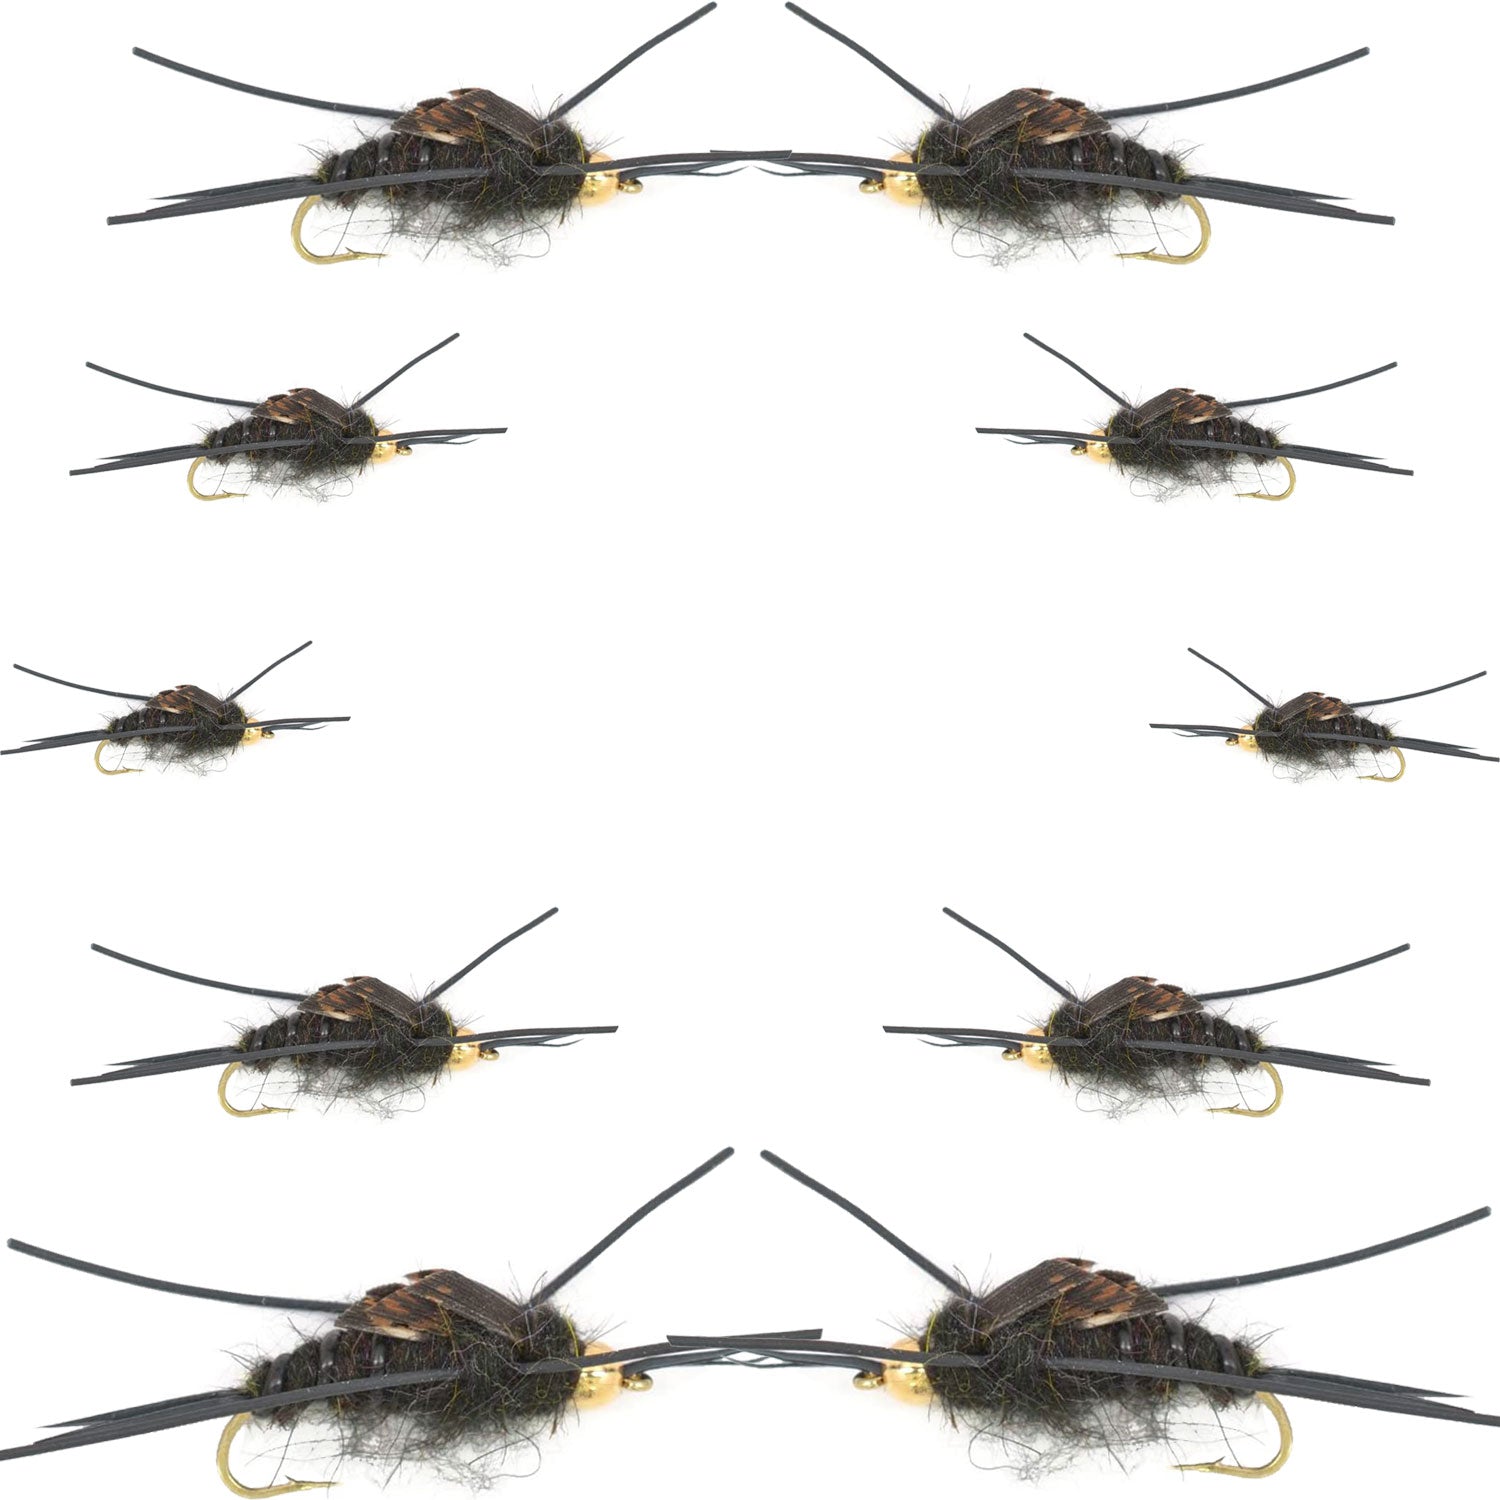 Colección Basics – Kaufmann's Tungsten Bead Black Stonefly Nymph Surtido 10 cabezas de cuentas patas de goma moscas húmedas – 2 ganchos de cada tamaño 4, 6, 8, 10 y 12 